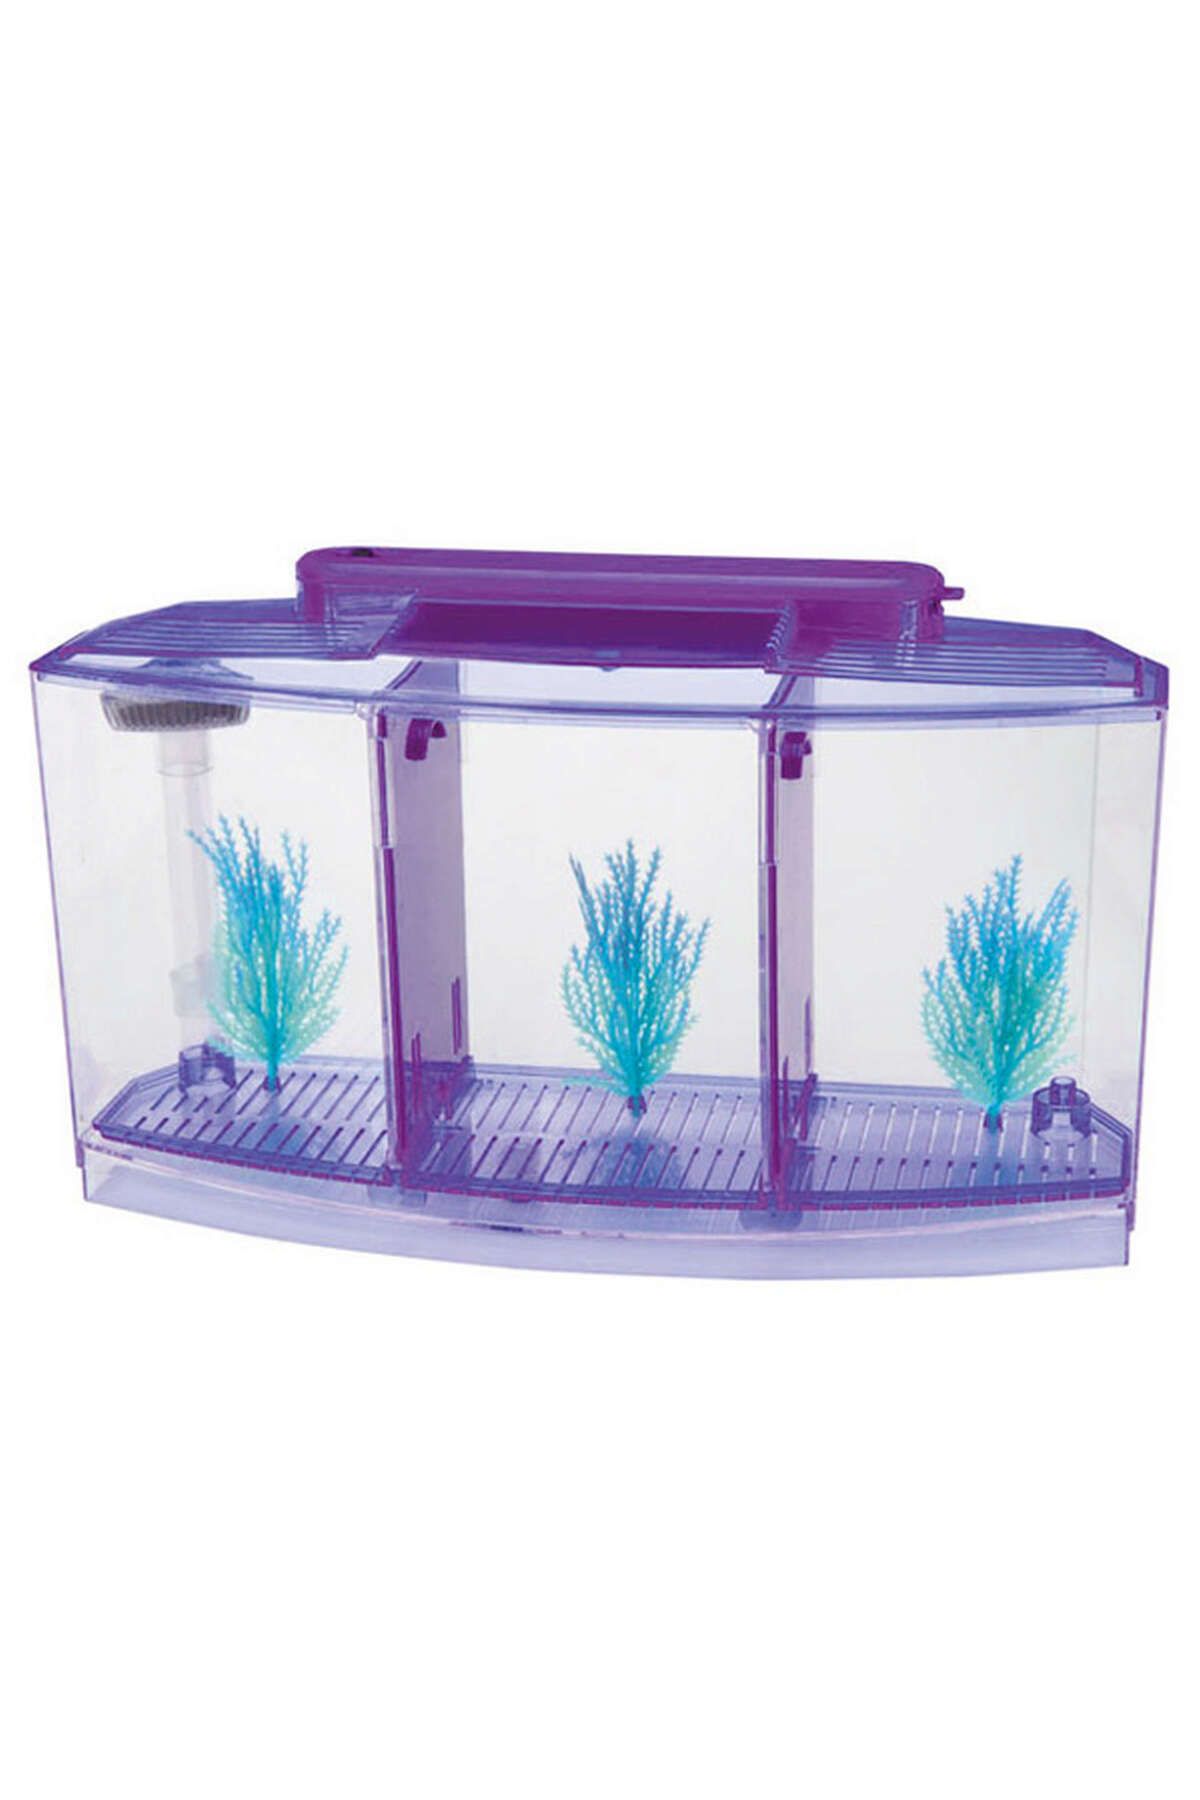 Аквариум Box Betta 1.3. Специальные аквариумы для петушков. Фильтр для аквариума для петушка